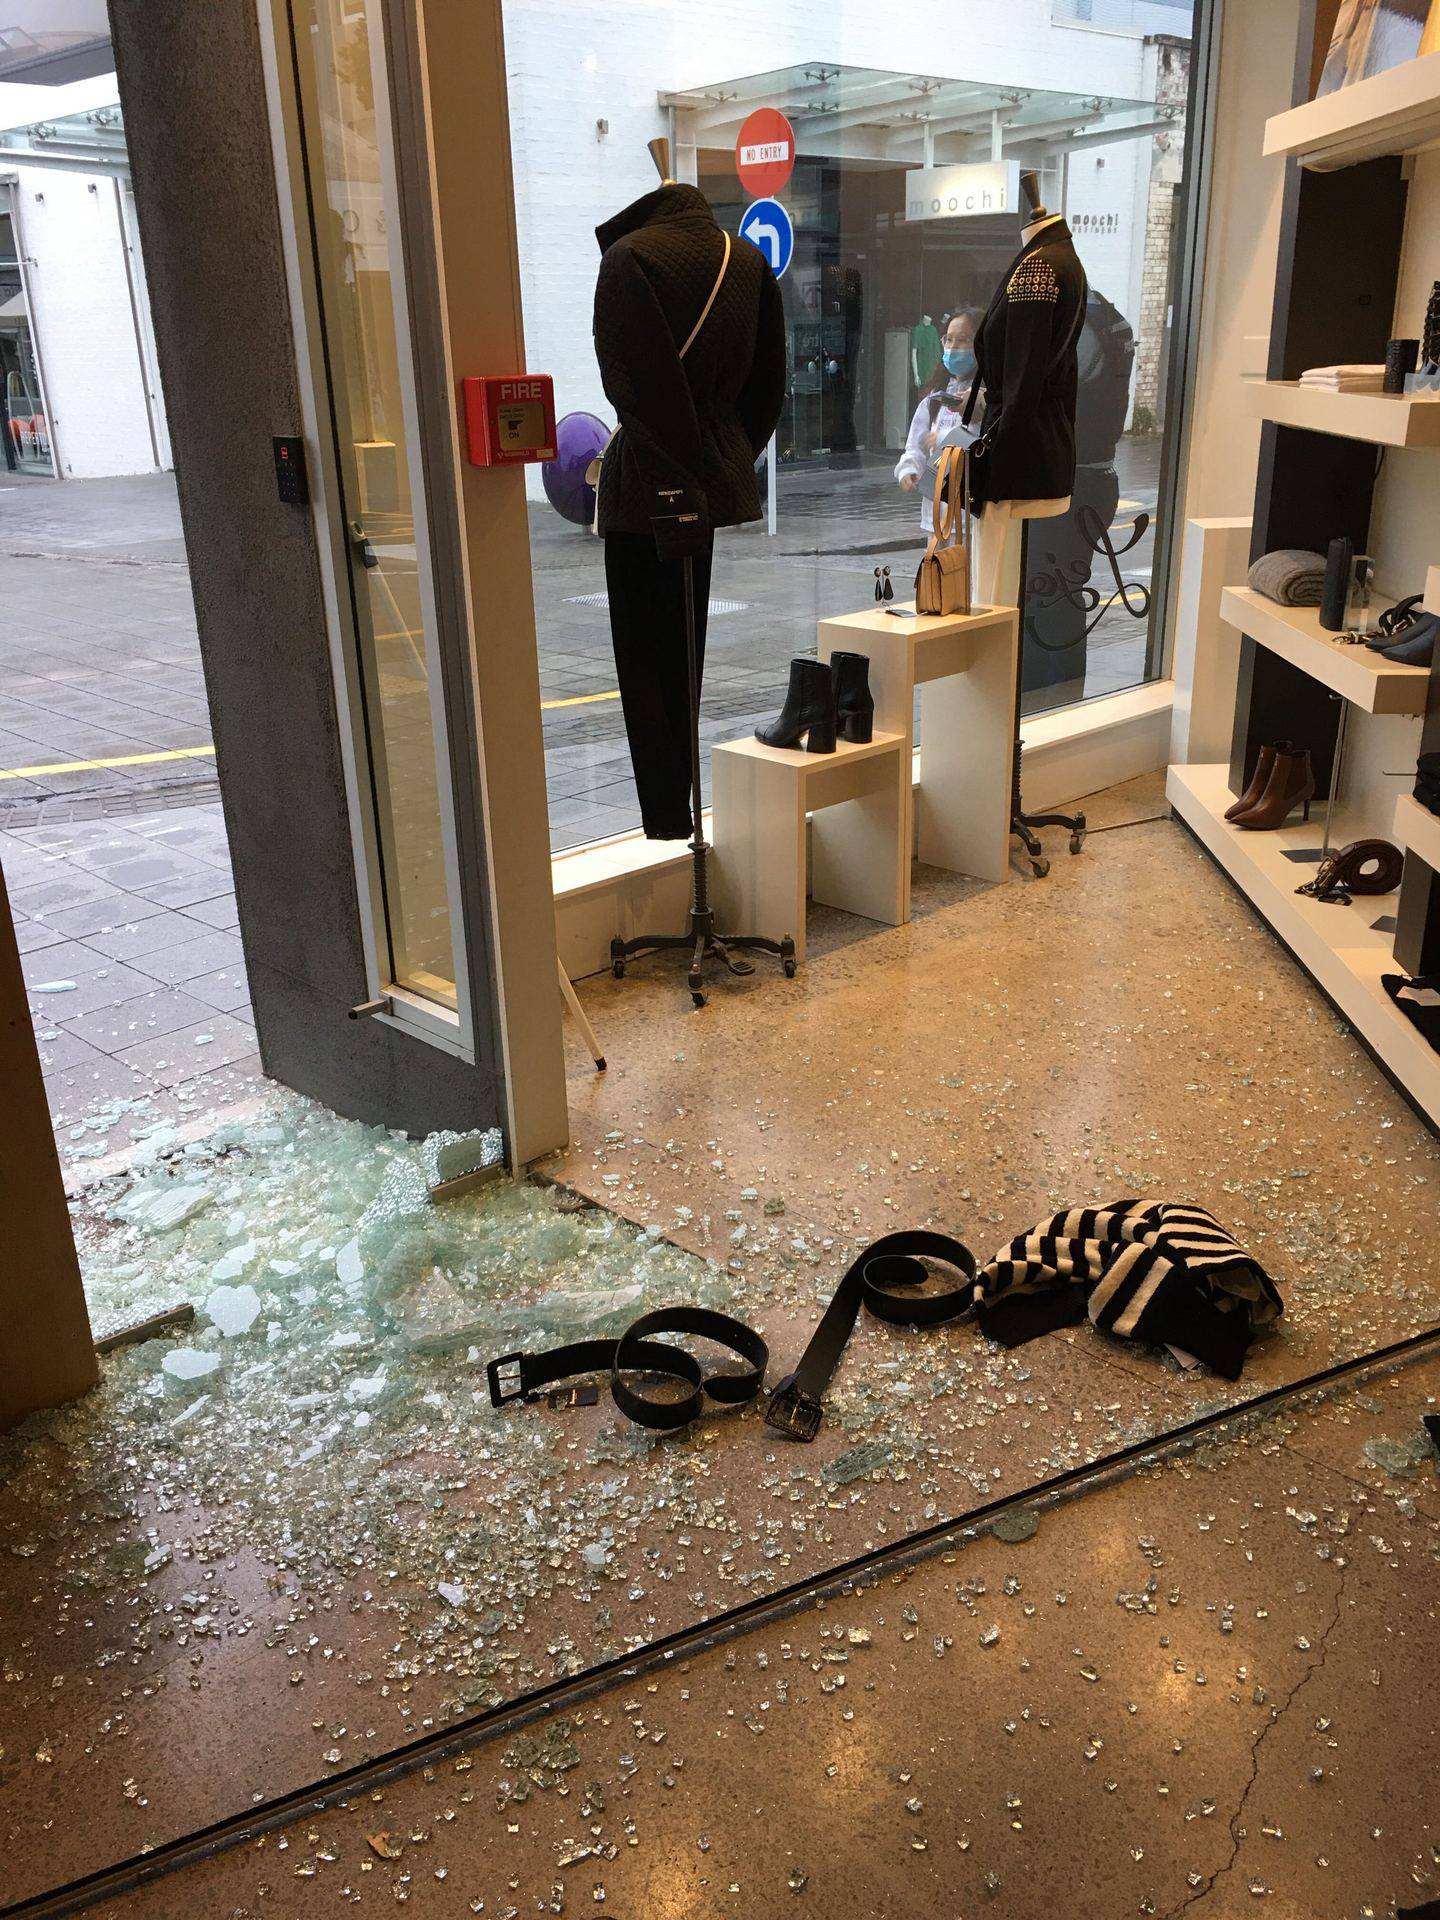 Newmarket 的 Lejose 时装屋在两天内被闯入两次，小偷偷走了包括手袋和衣服在内的奢侈品。 照片/提供